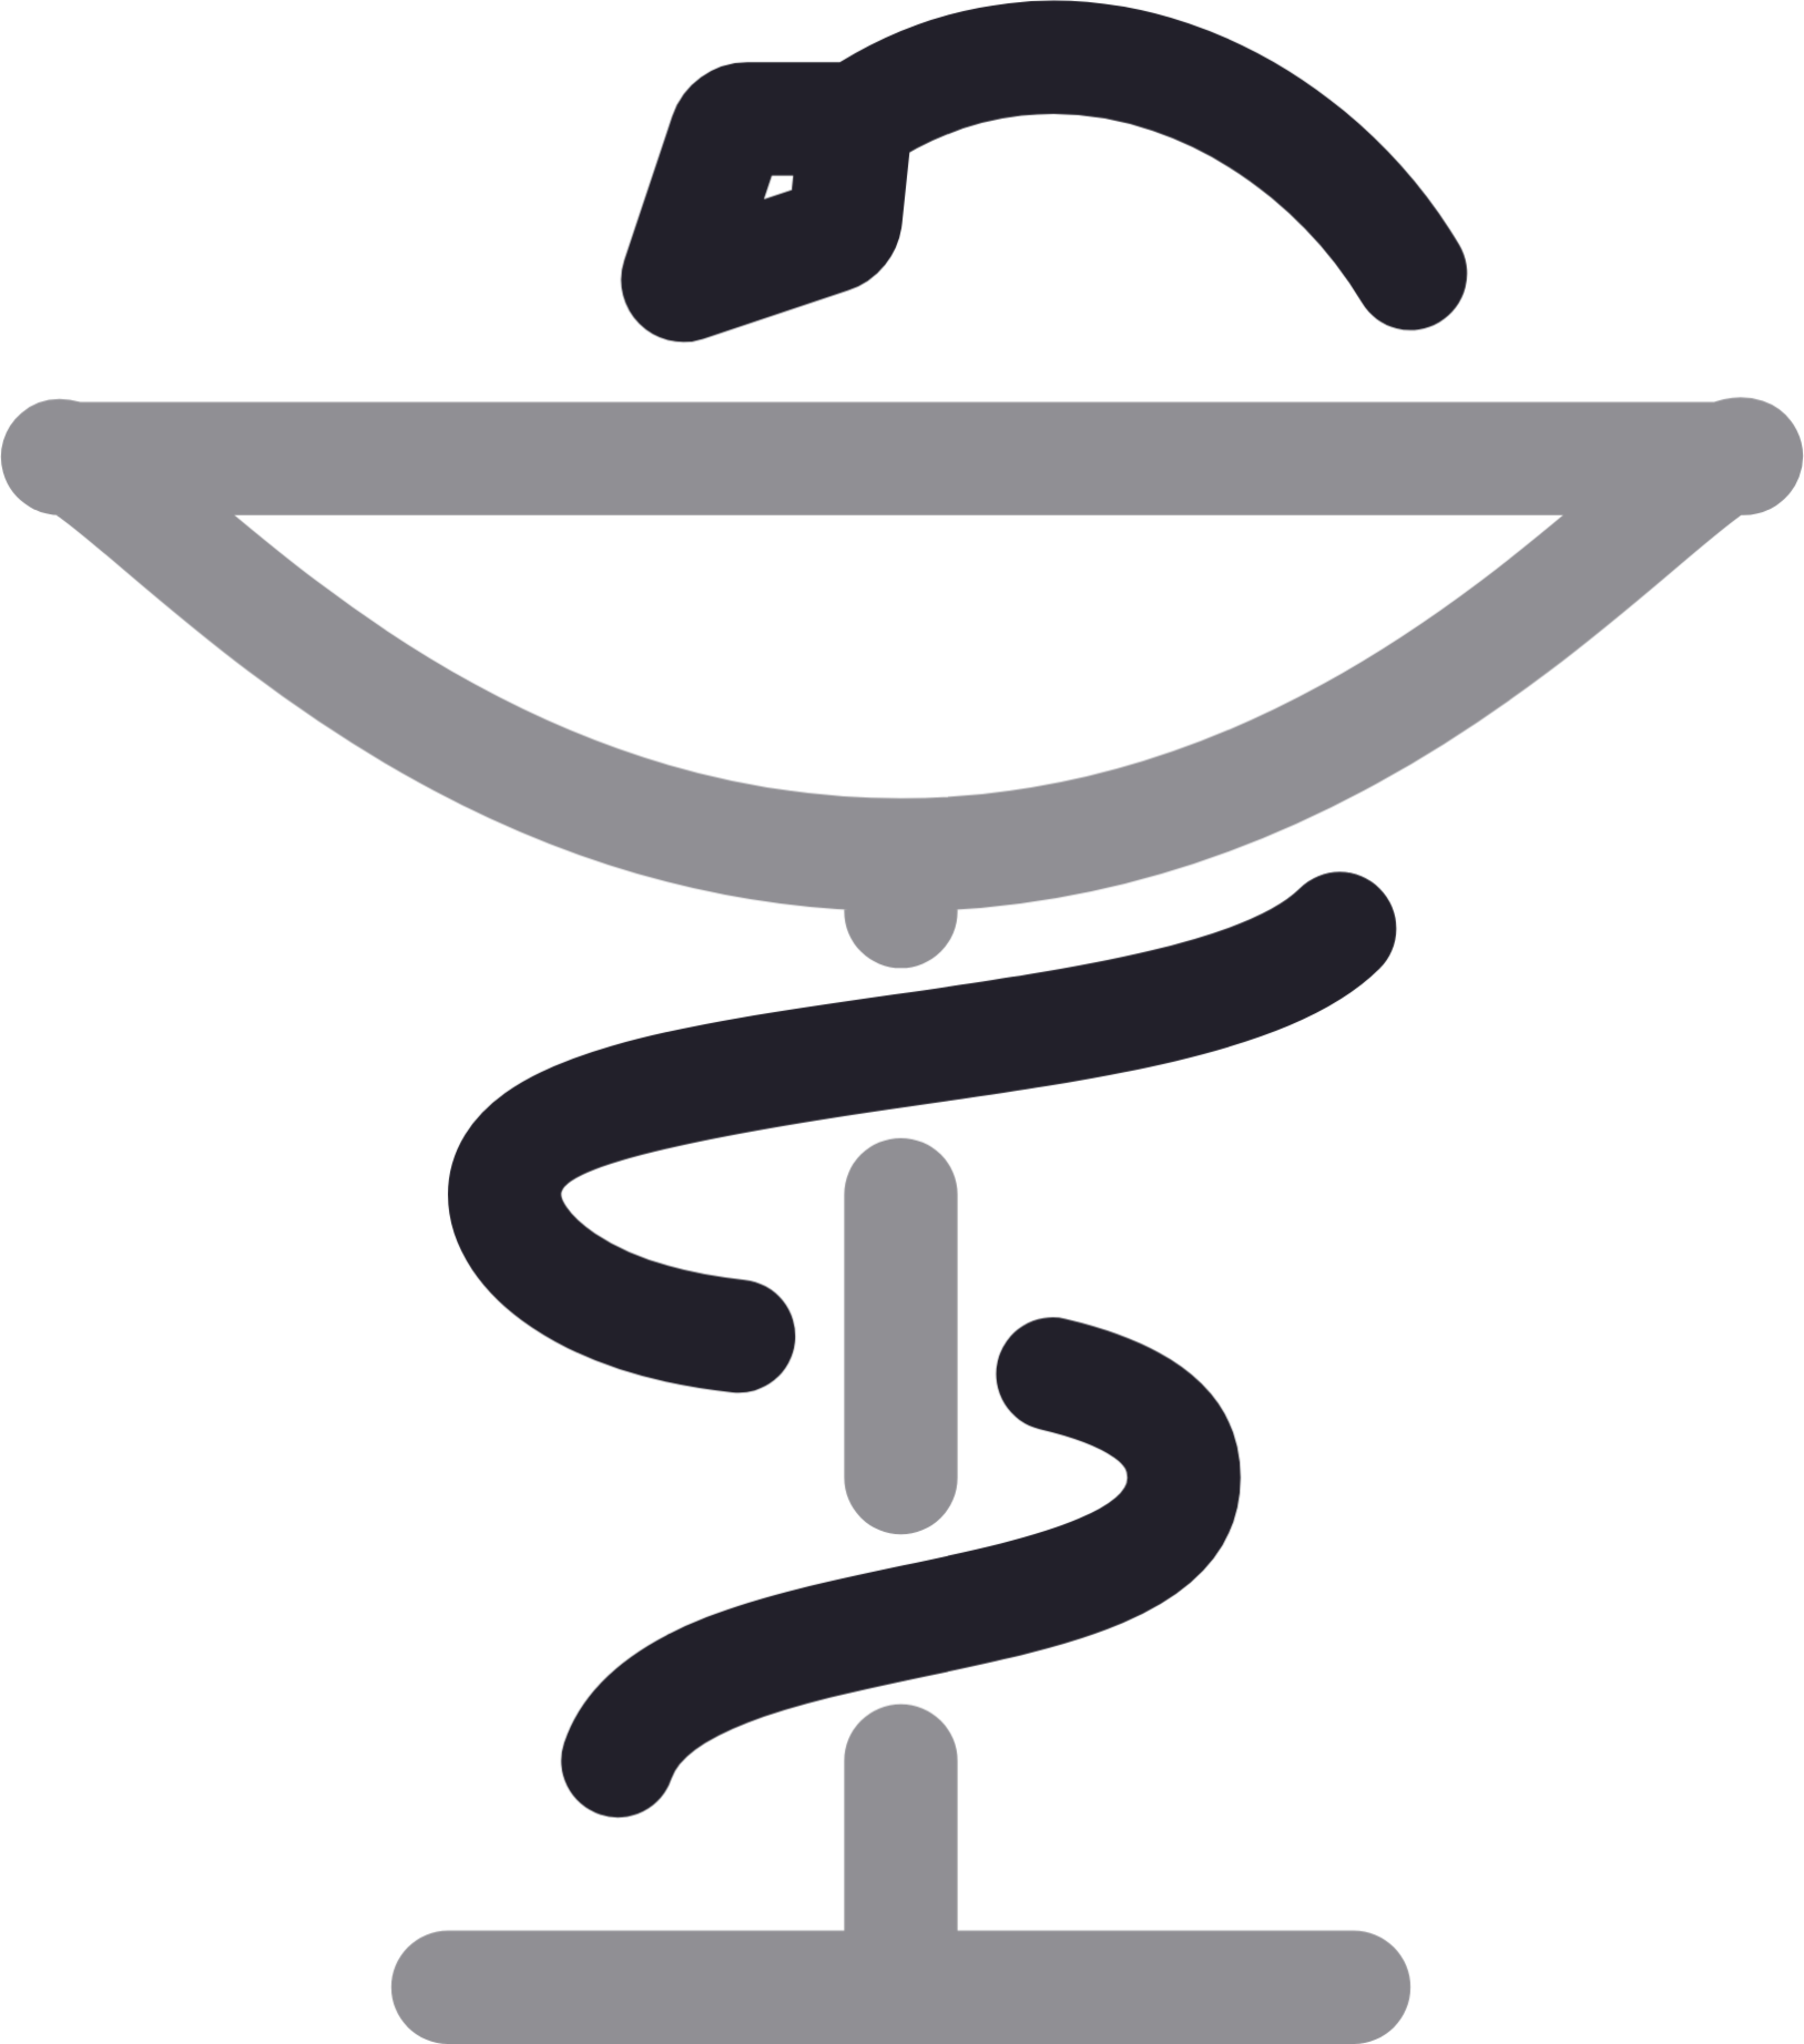 pharmacy symbols images